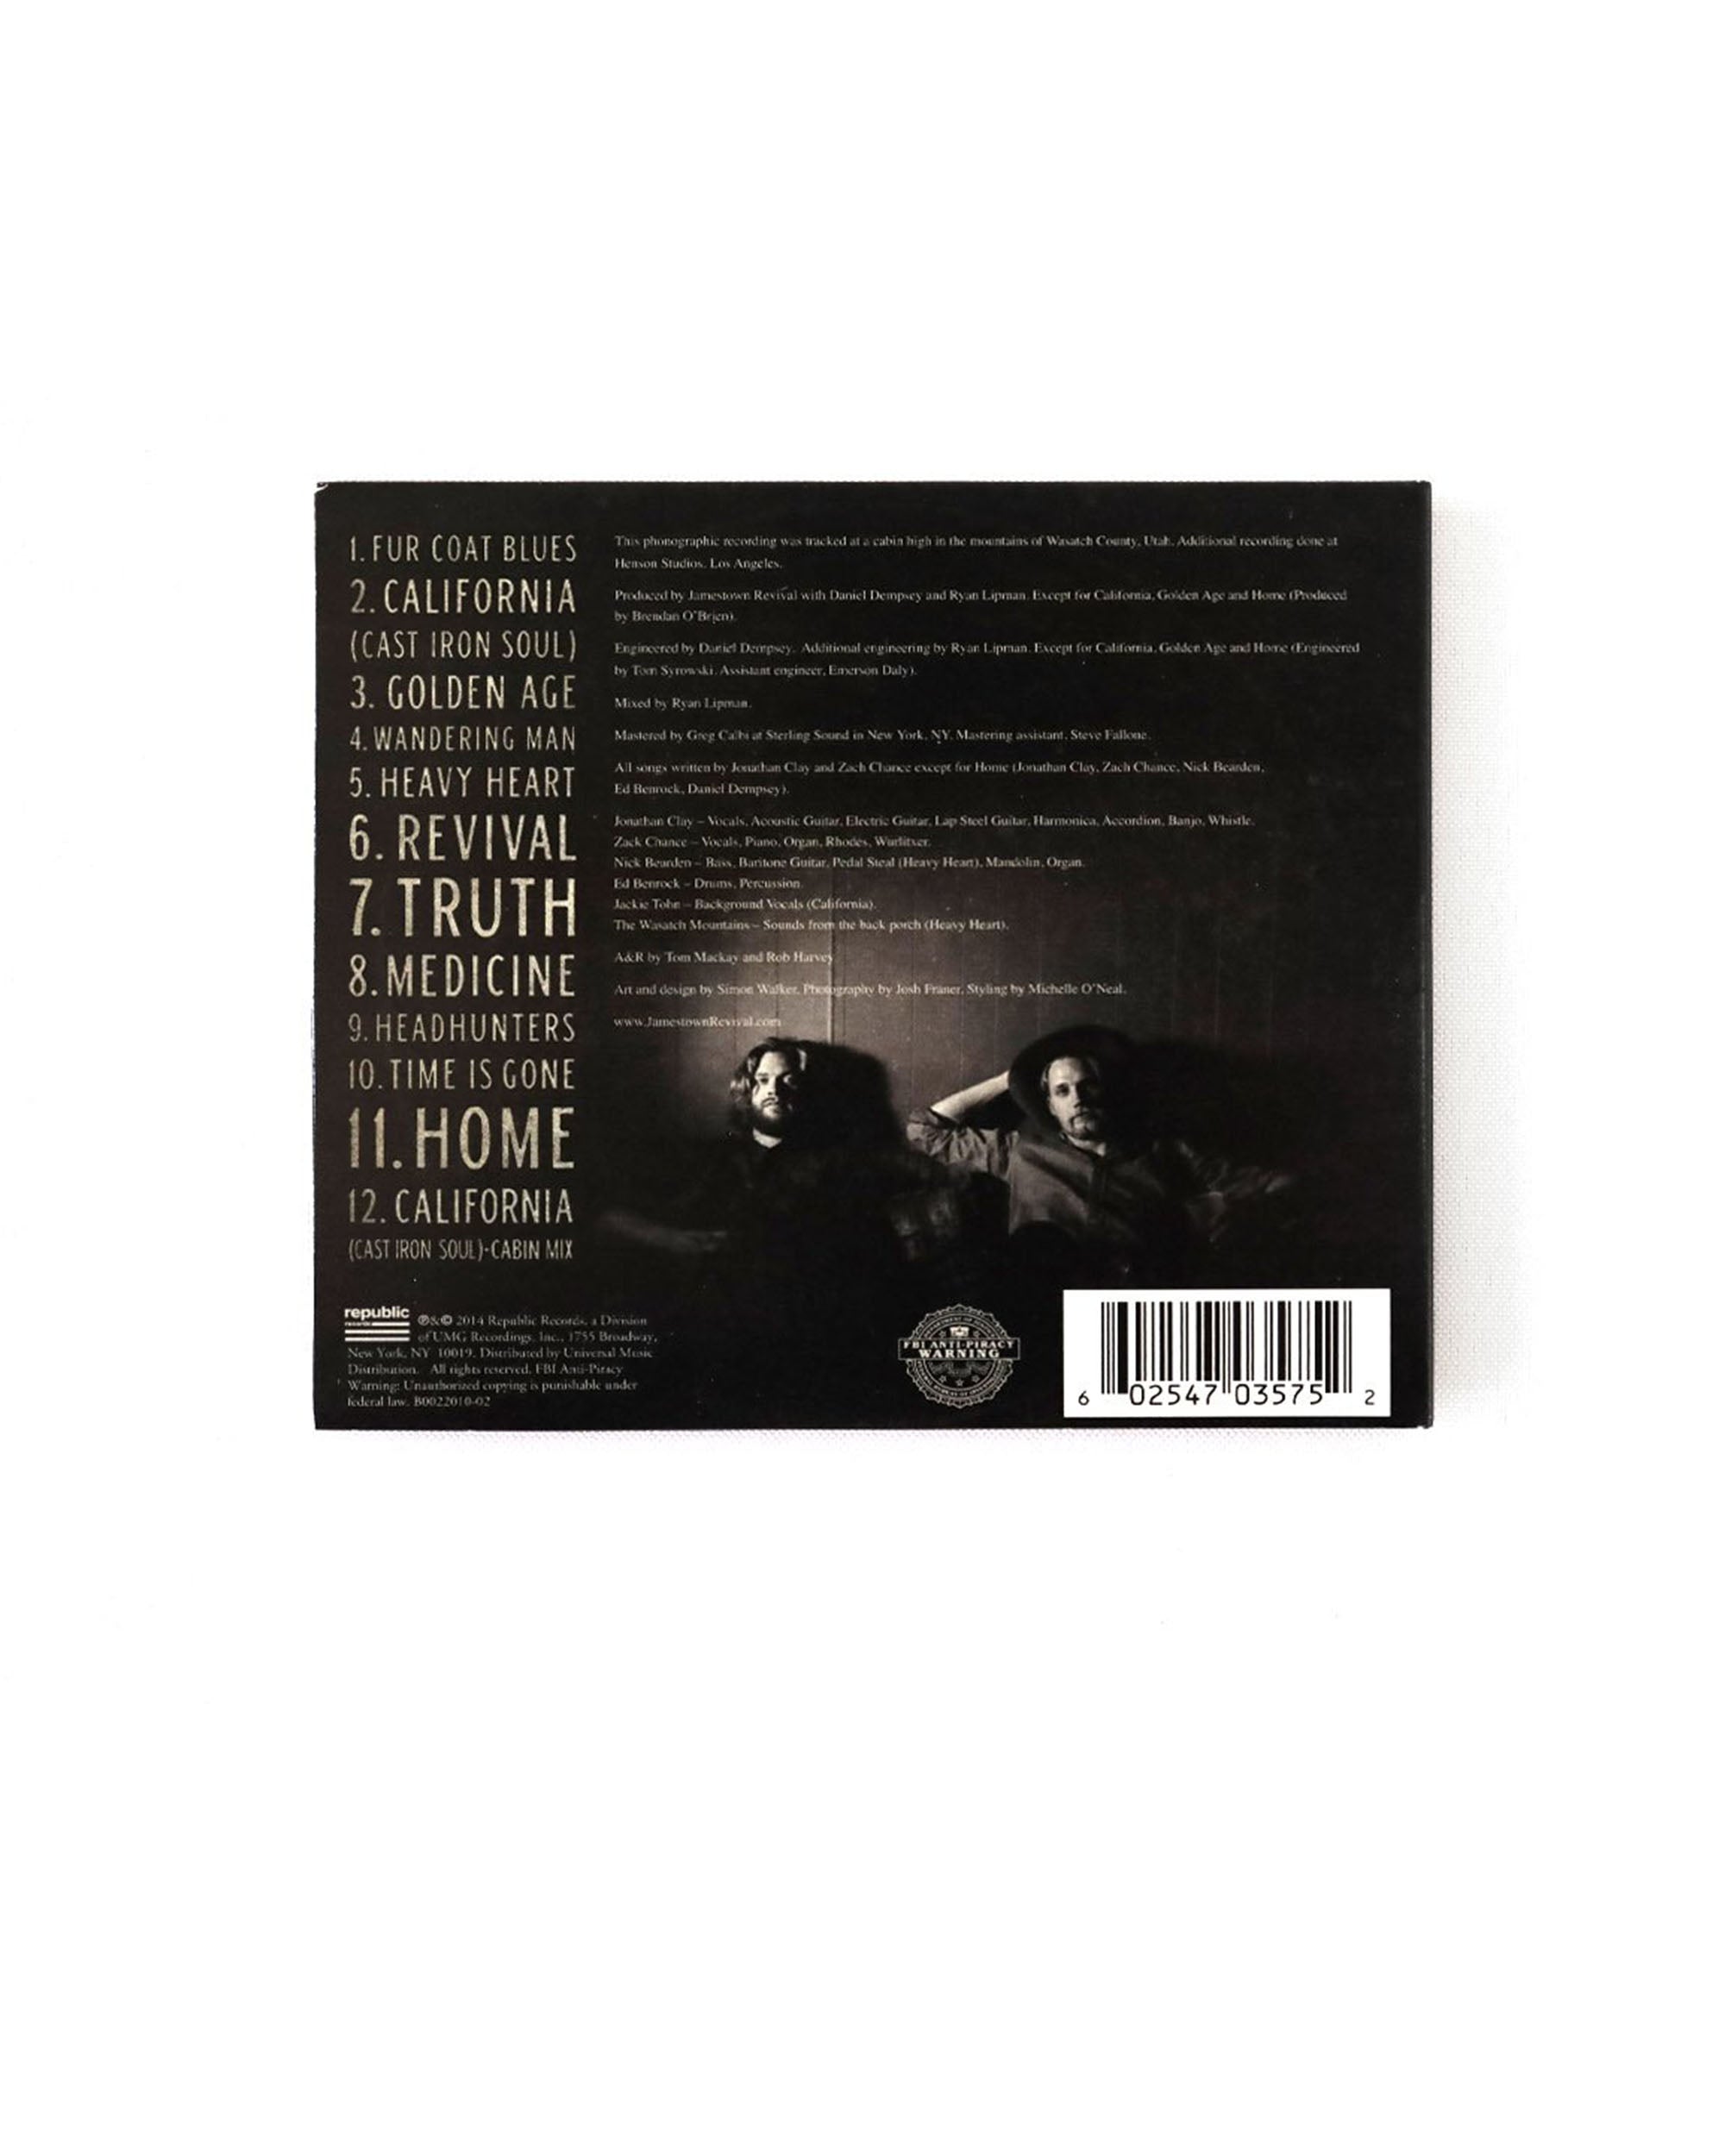 UTAH (CD)